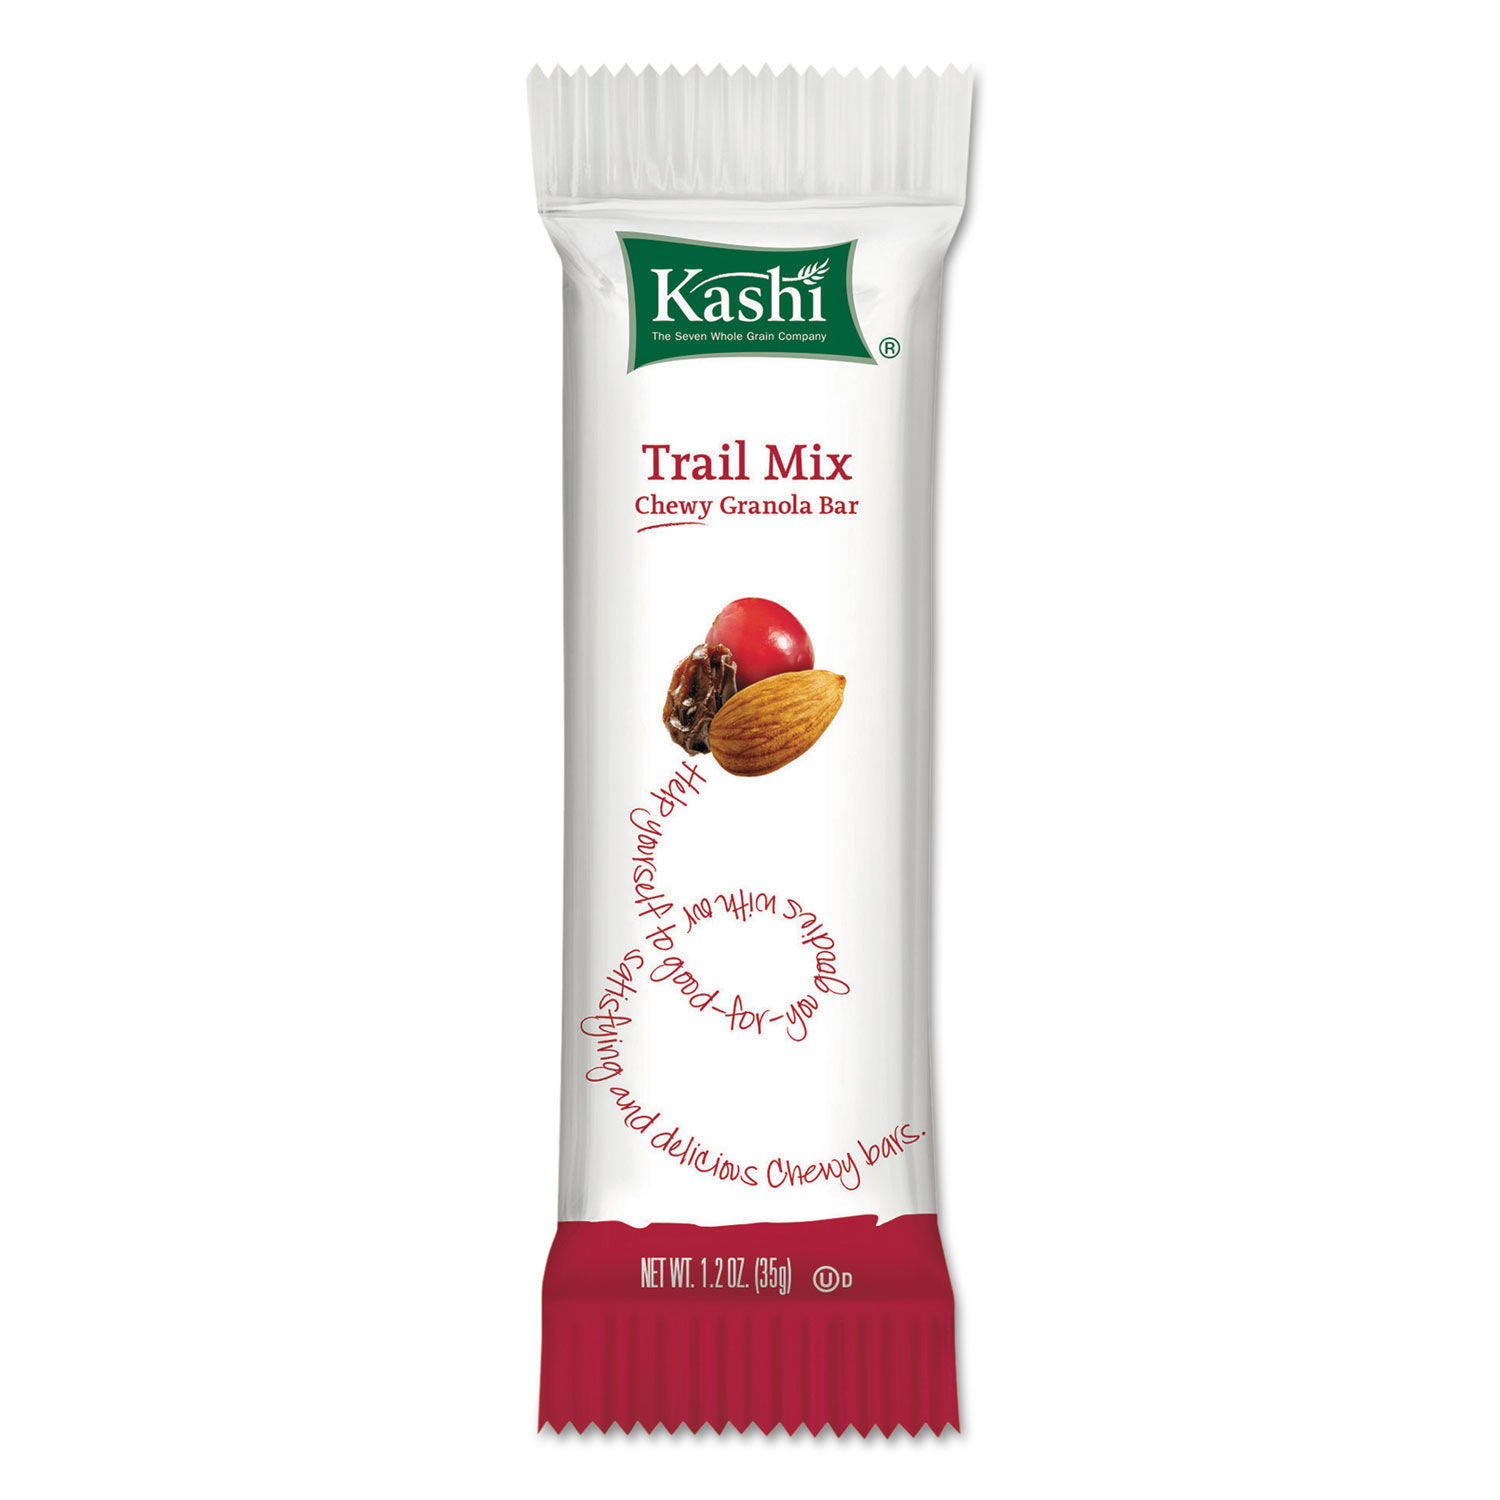  Kashi 1862737947 Kashi TLC Chewy Granola Bars, Trail Mix, 35 g, 12/Box (KEB37947) 